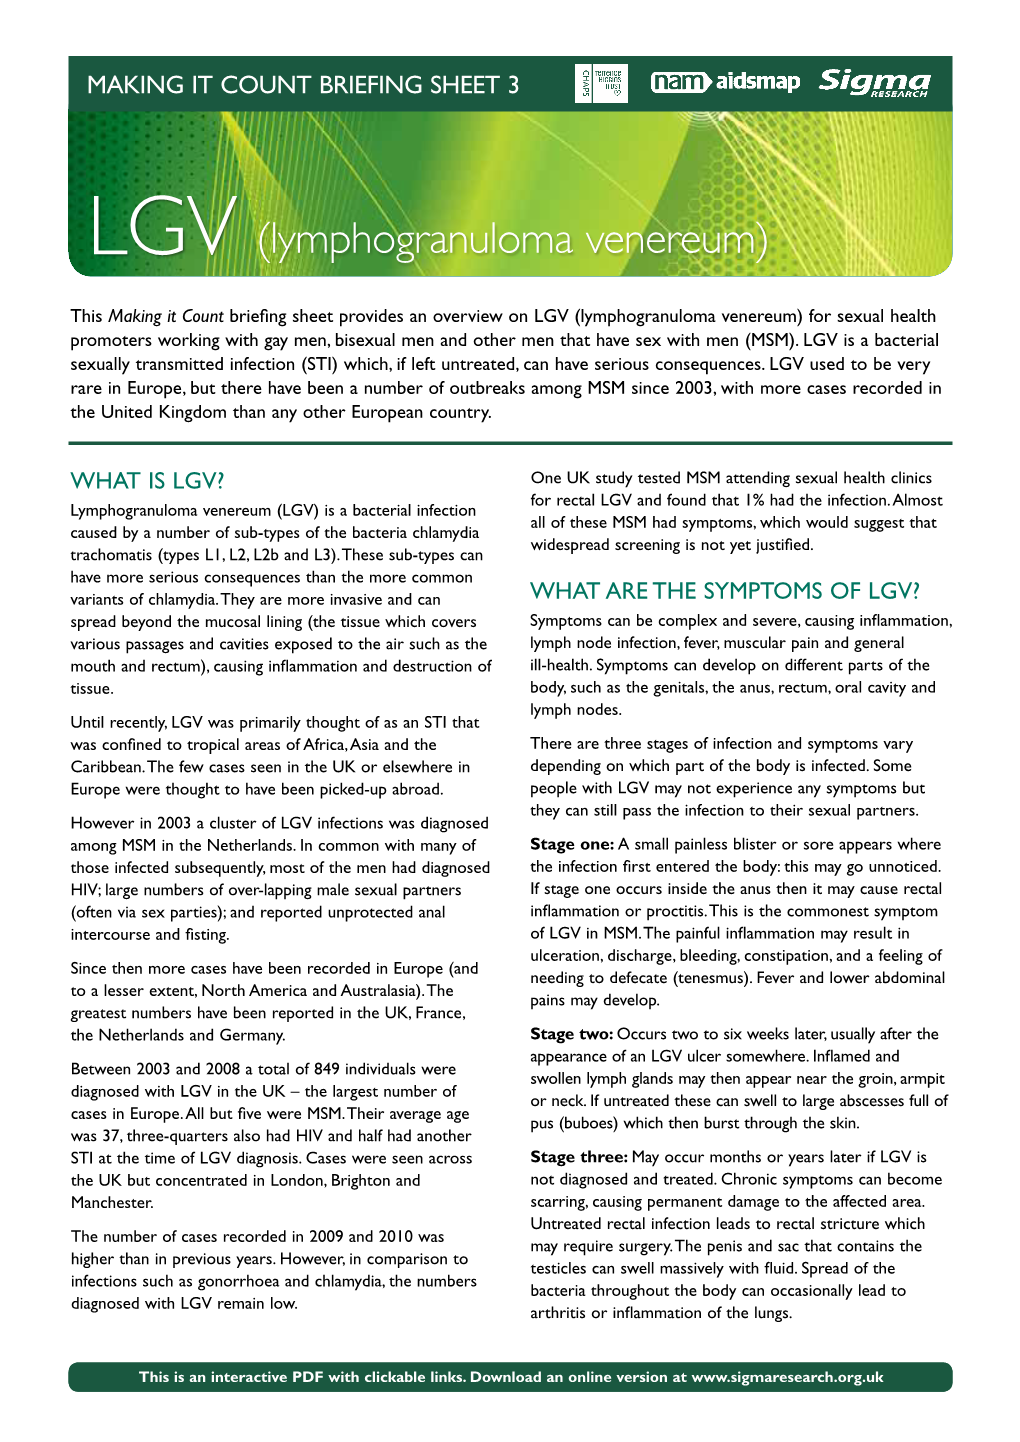 LGV (Lymphogranuloma Venereum)